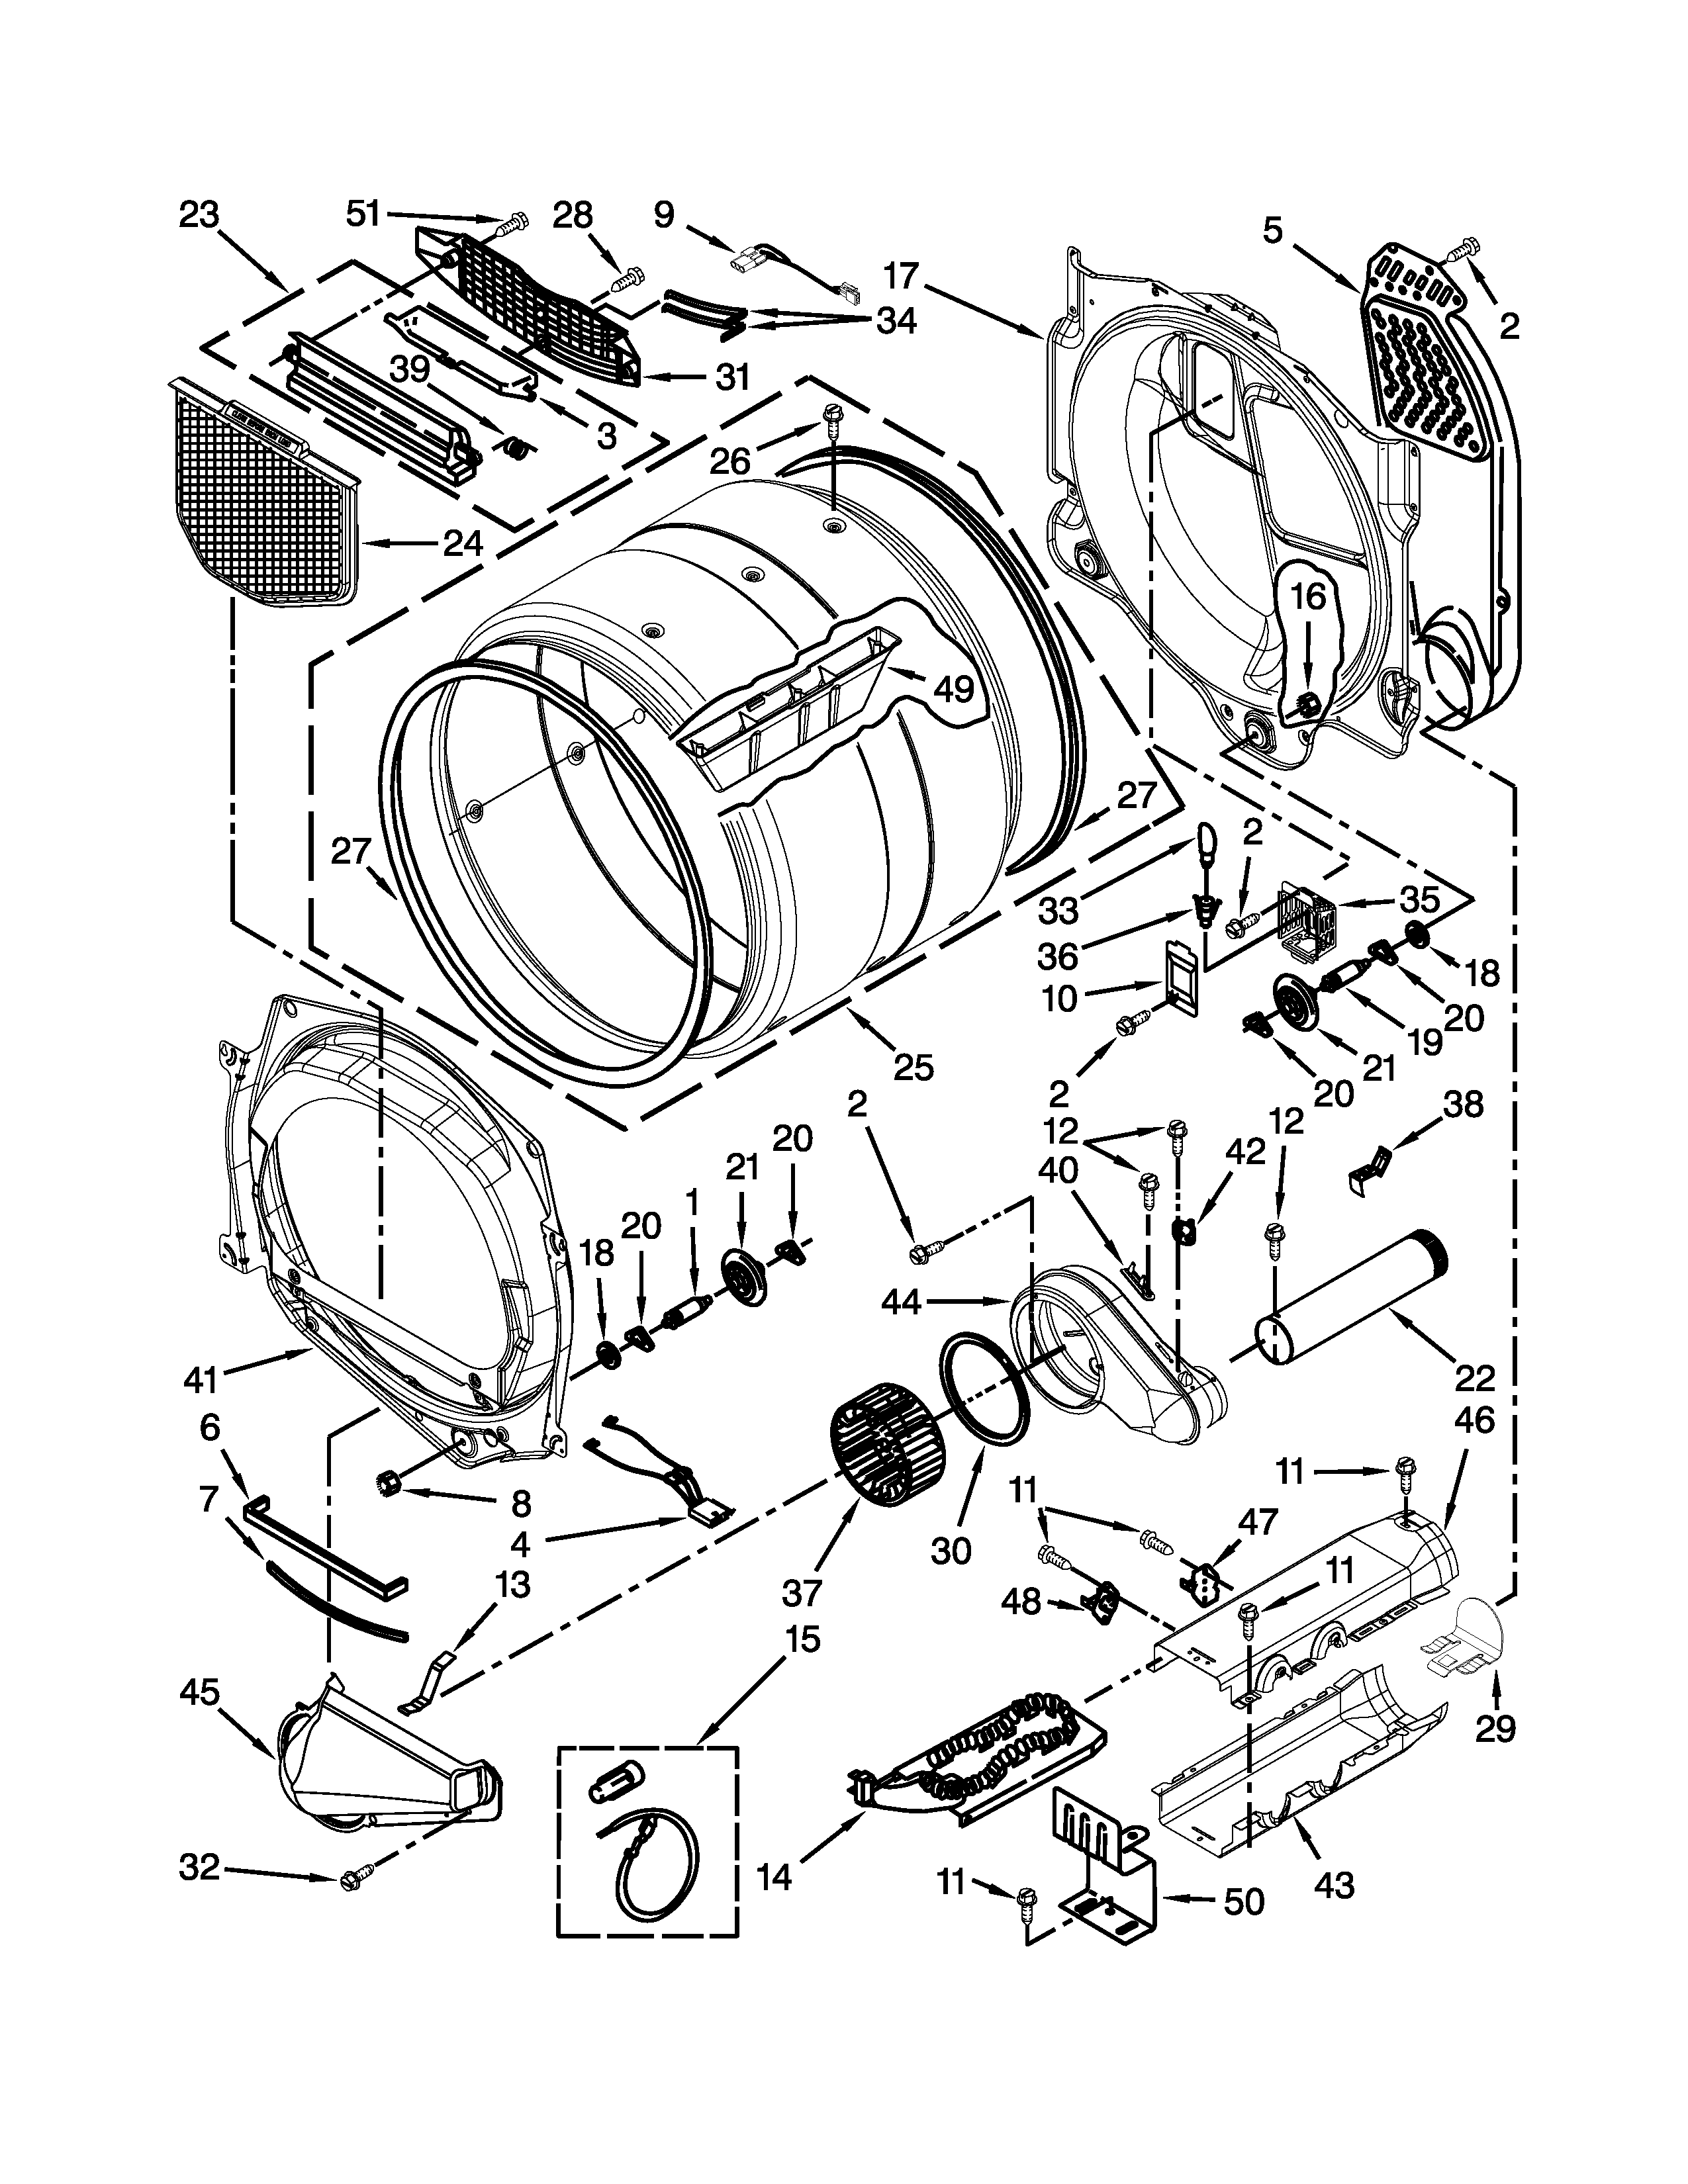 schematic whirlpool duet dryer heating element wiring diagram